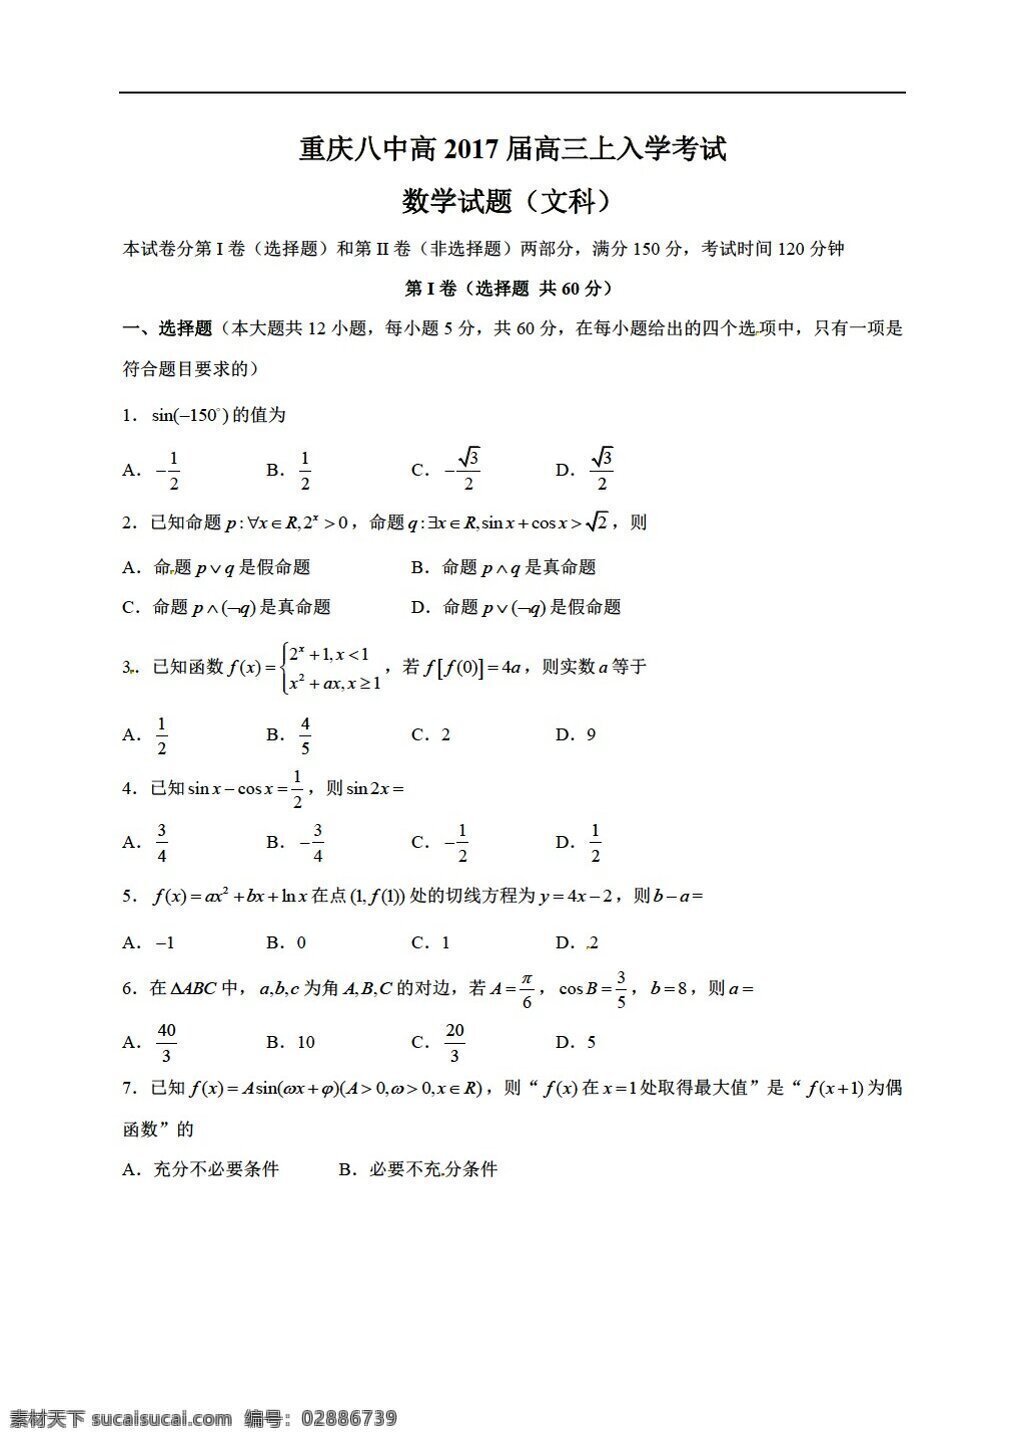 数学 人教 新 课 标 a 版 重庆市 八 中学 2017 届 上 学期 入学 考试 文 试题 高考专区 试卷